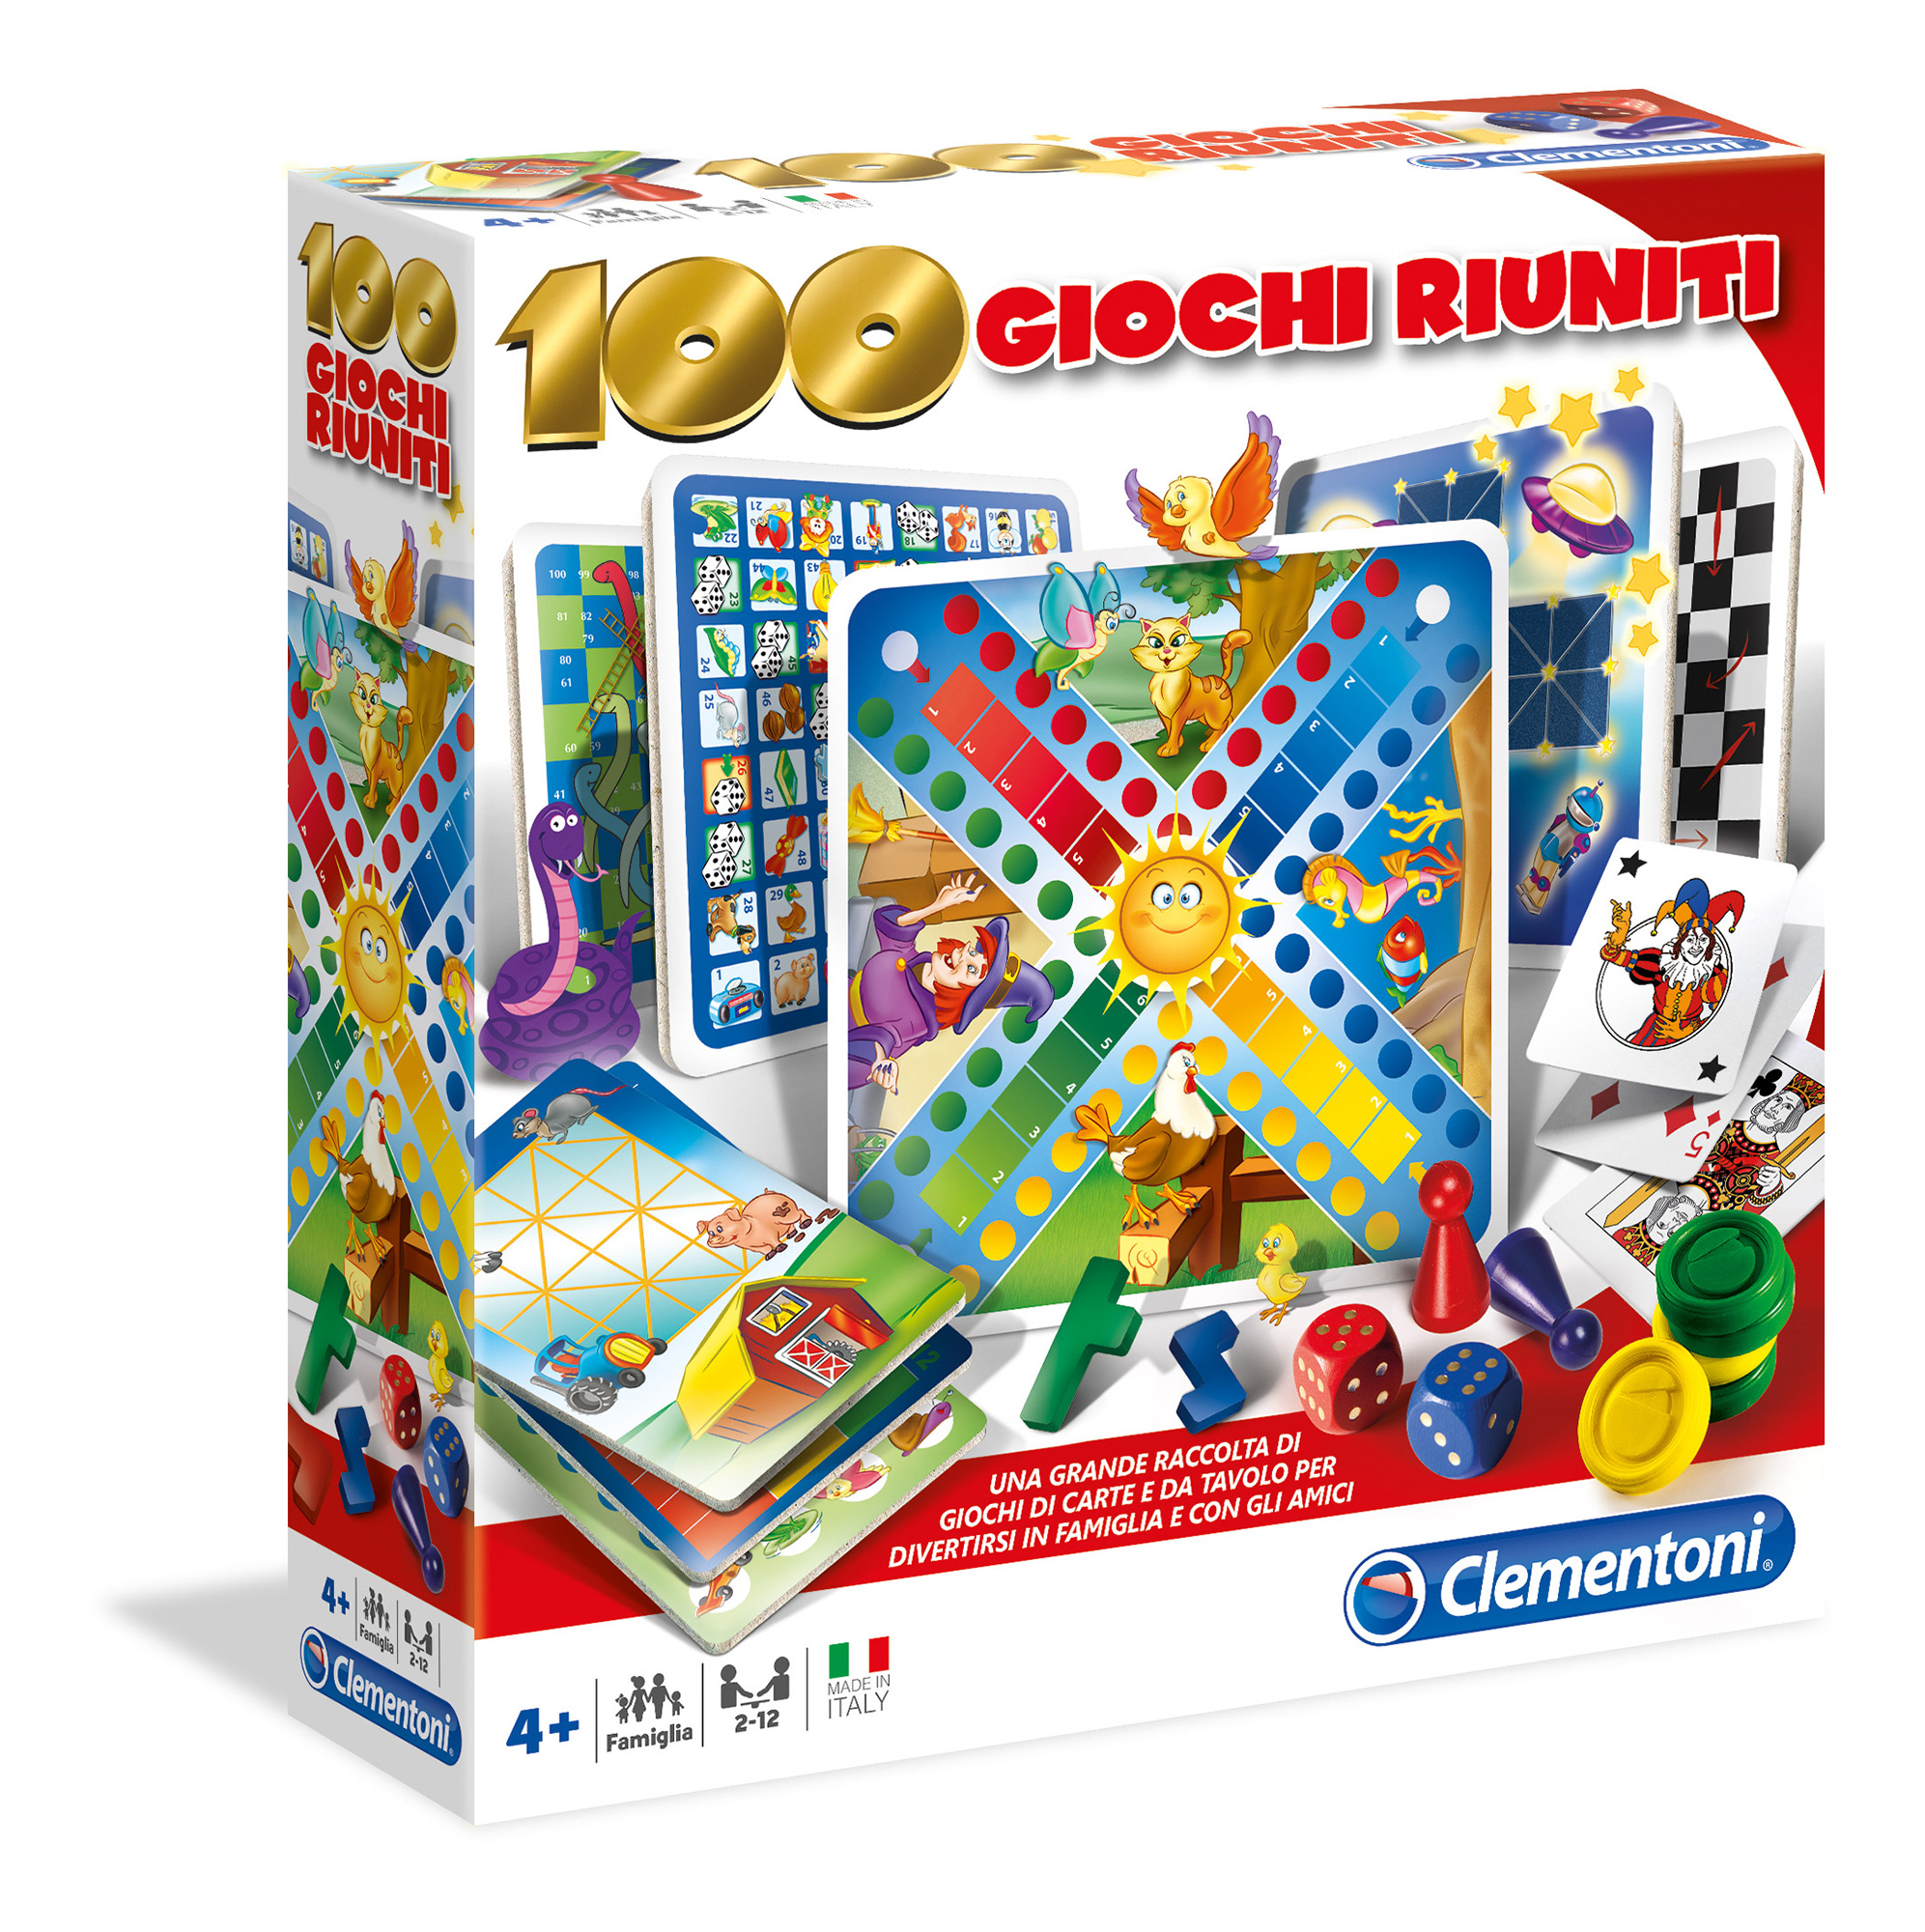 Clementoni - 12952 - 100 giochi riuniti - CLEMENTONI